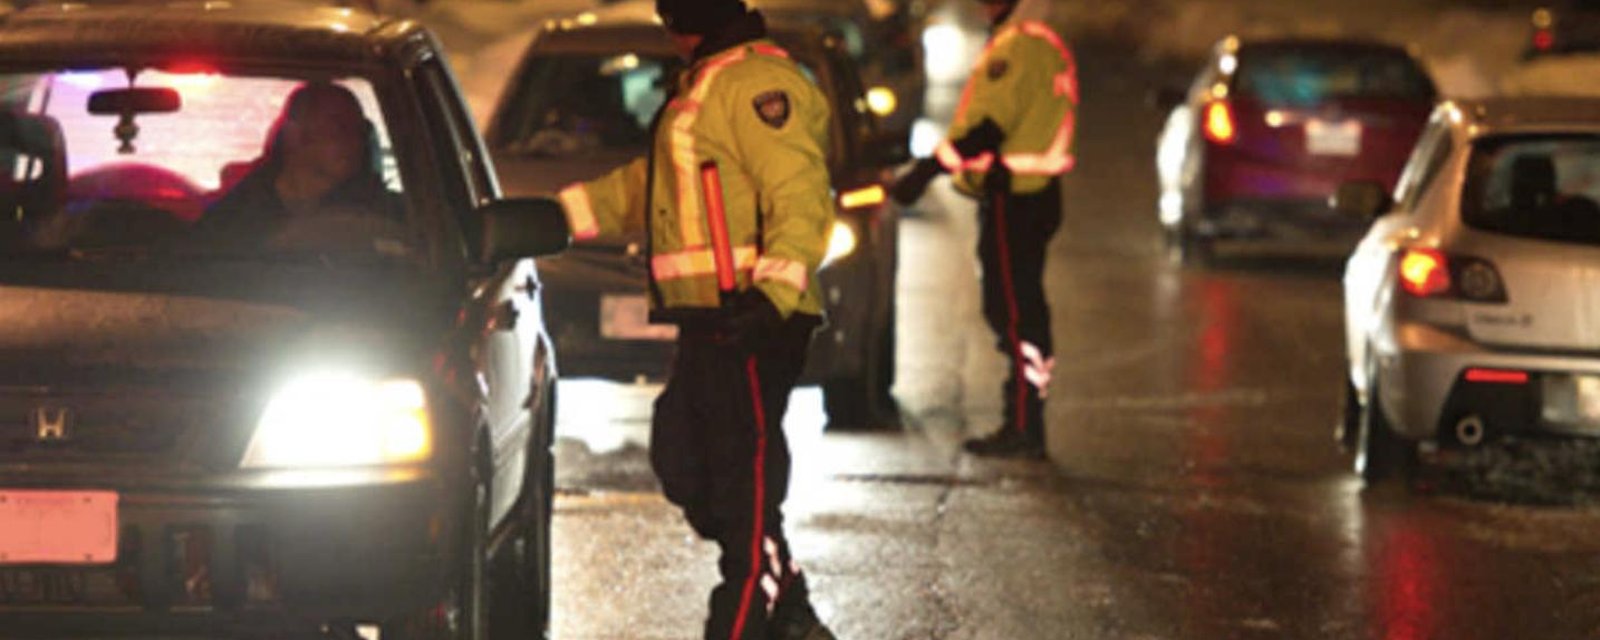 La police d'Ottawa a intercepté 250 conducteurs dans des barrages à Noël: voici combien ont pété la balloune